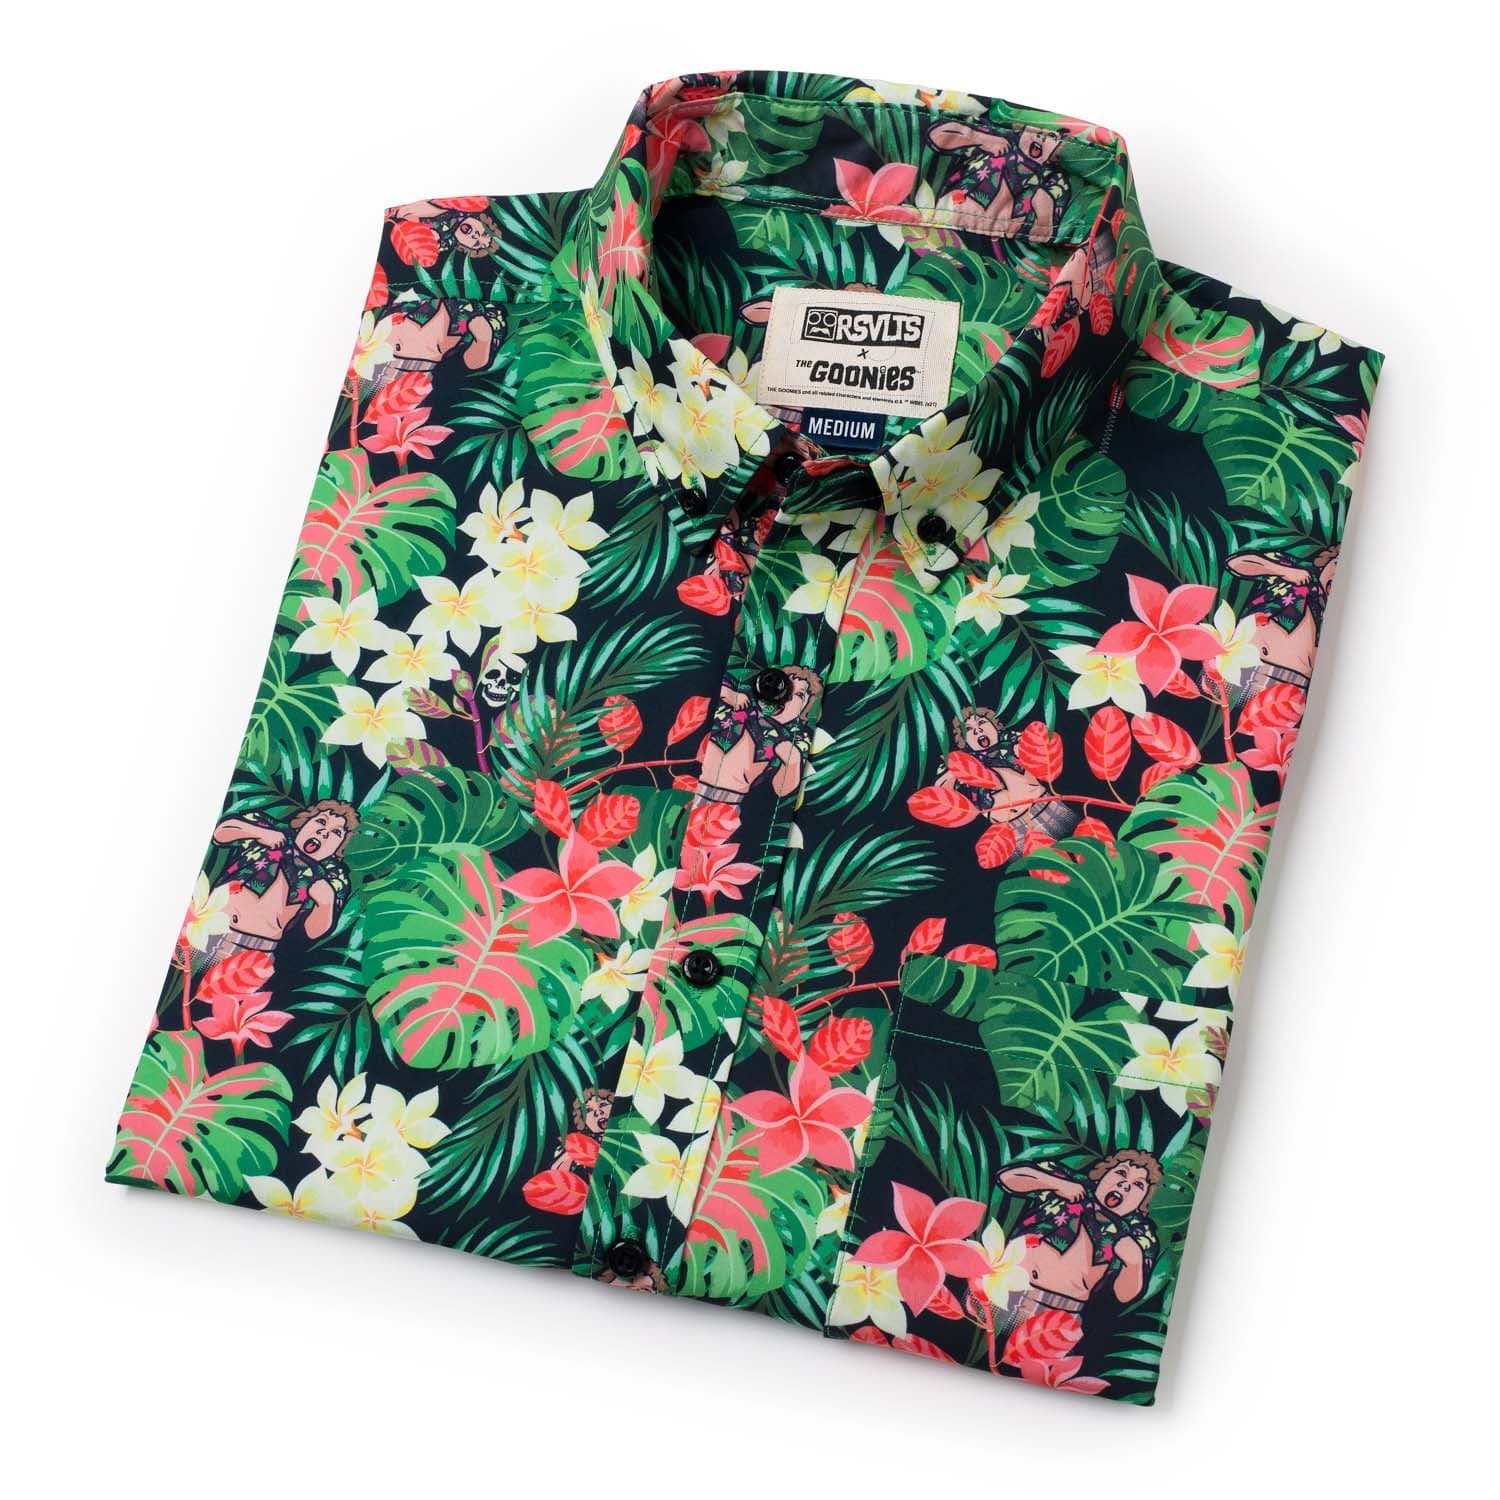 the goonies truffle shuffle hawaiian shirt 6871 4FD6c